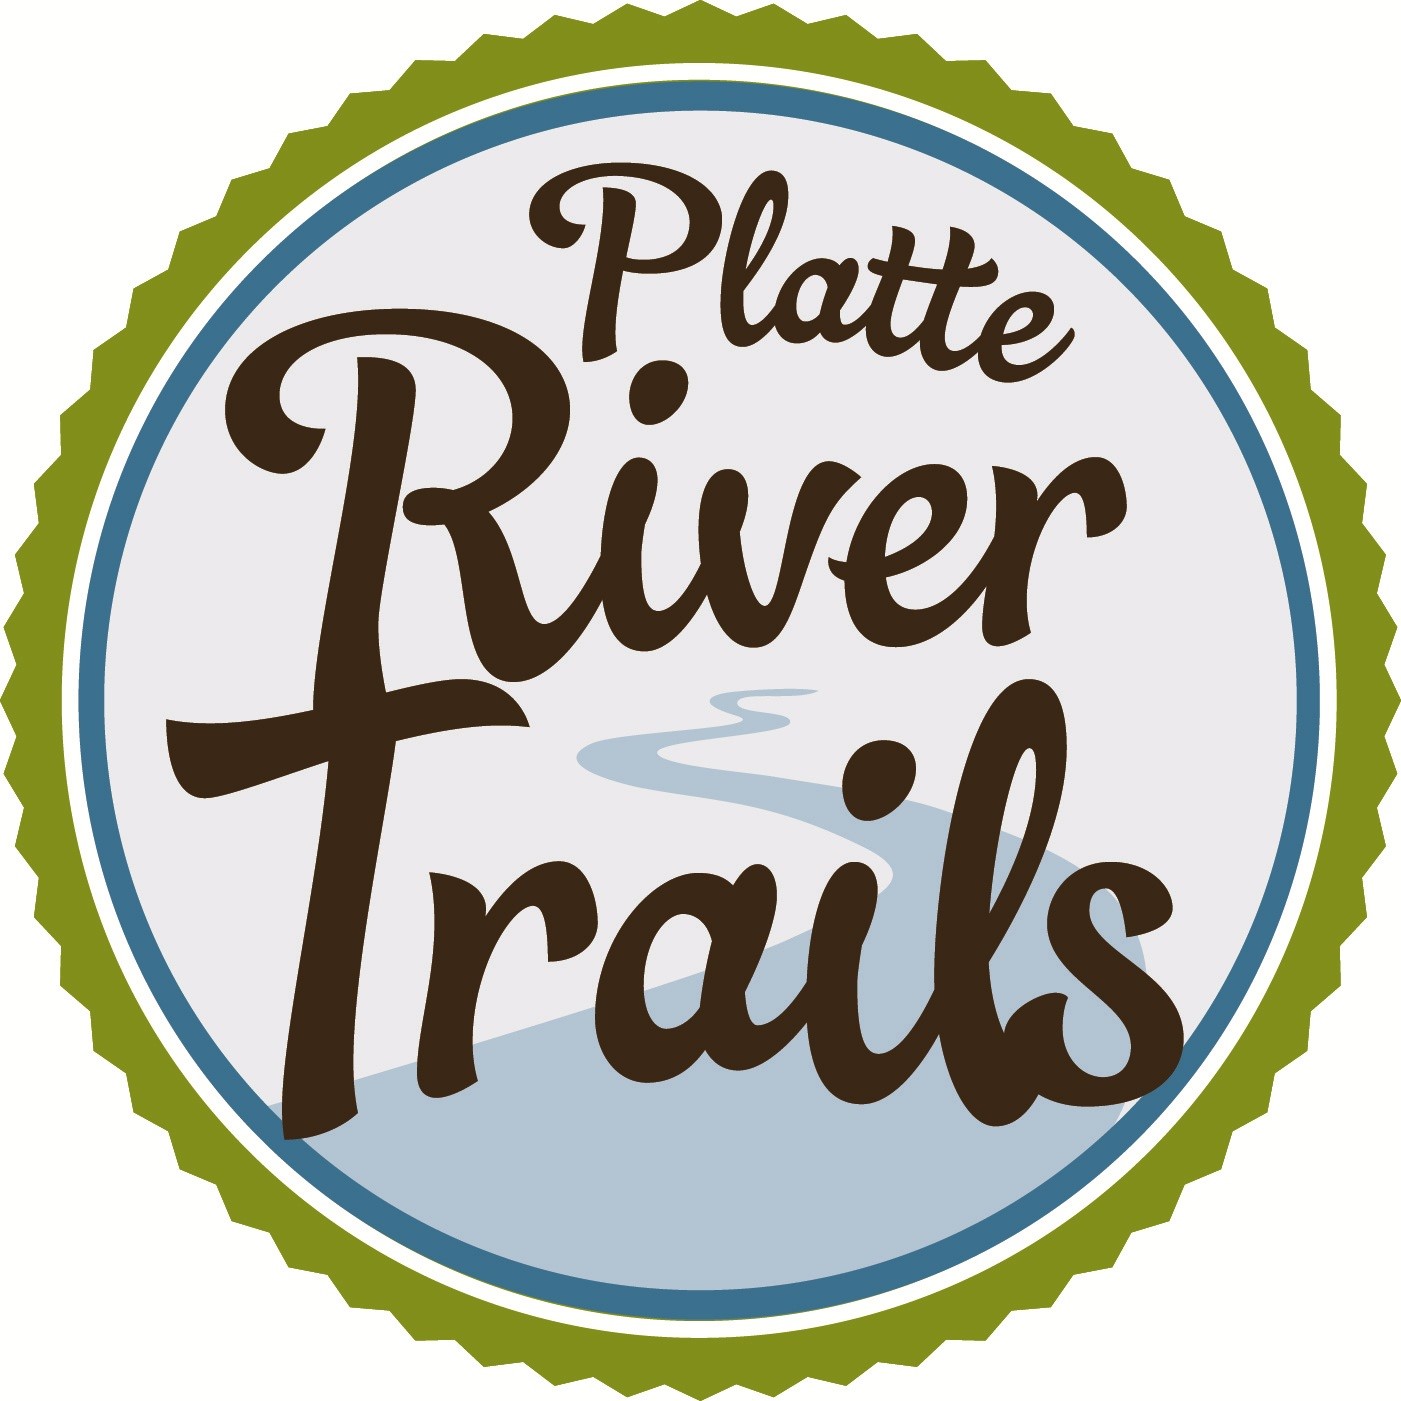 Platte River Trails